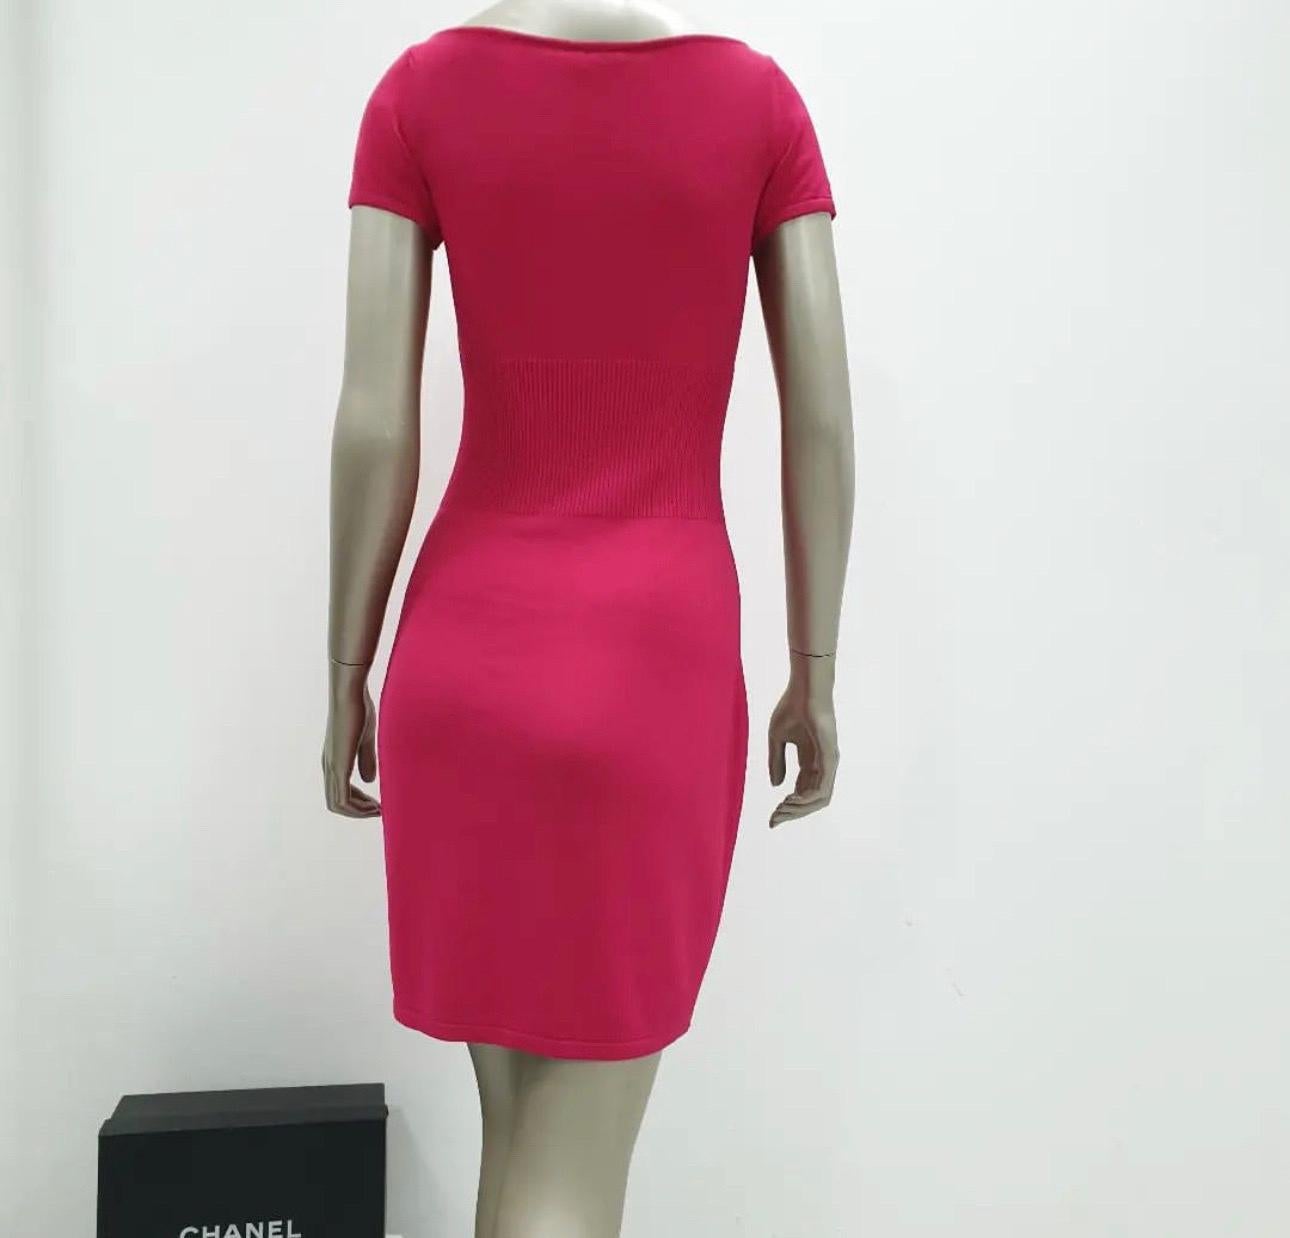 2010 Lion Logo CC.
Pink Knee-Length Pullover Knit Shift Sweater MIDI mini Dress 
Taille 36

Très bon état.